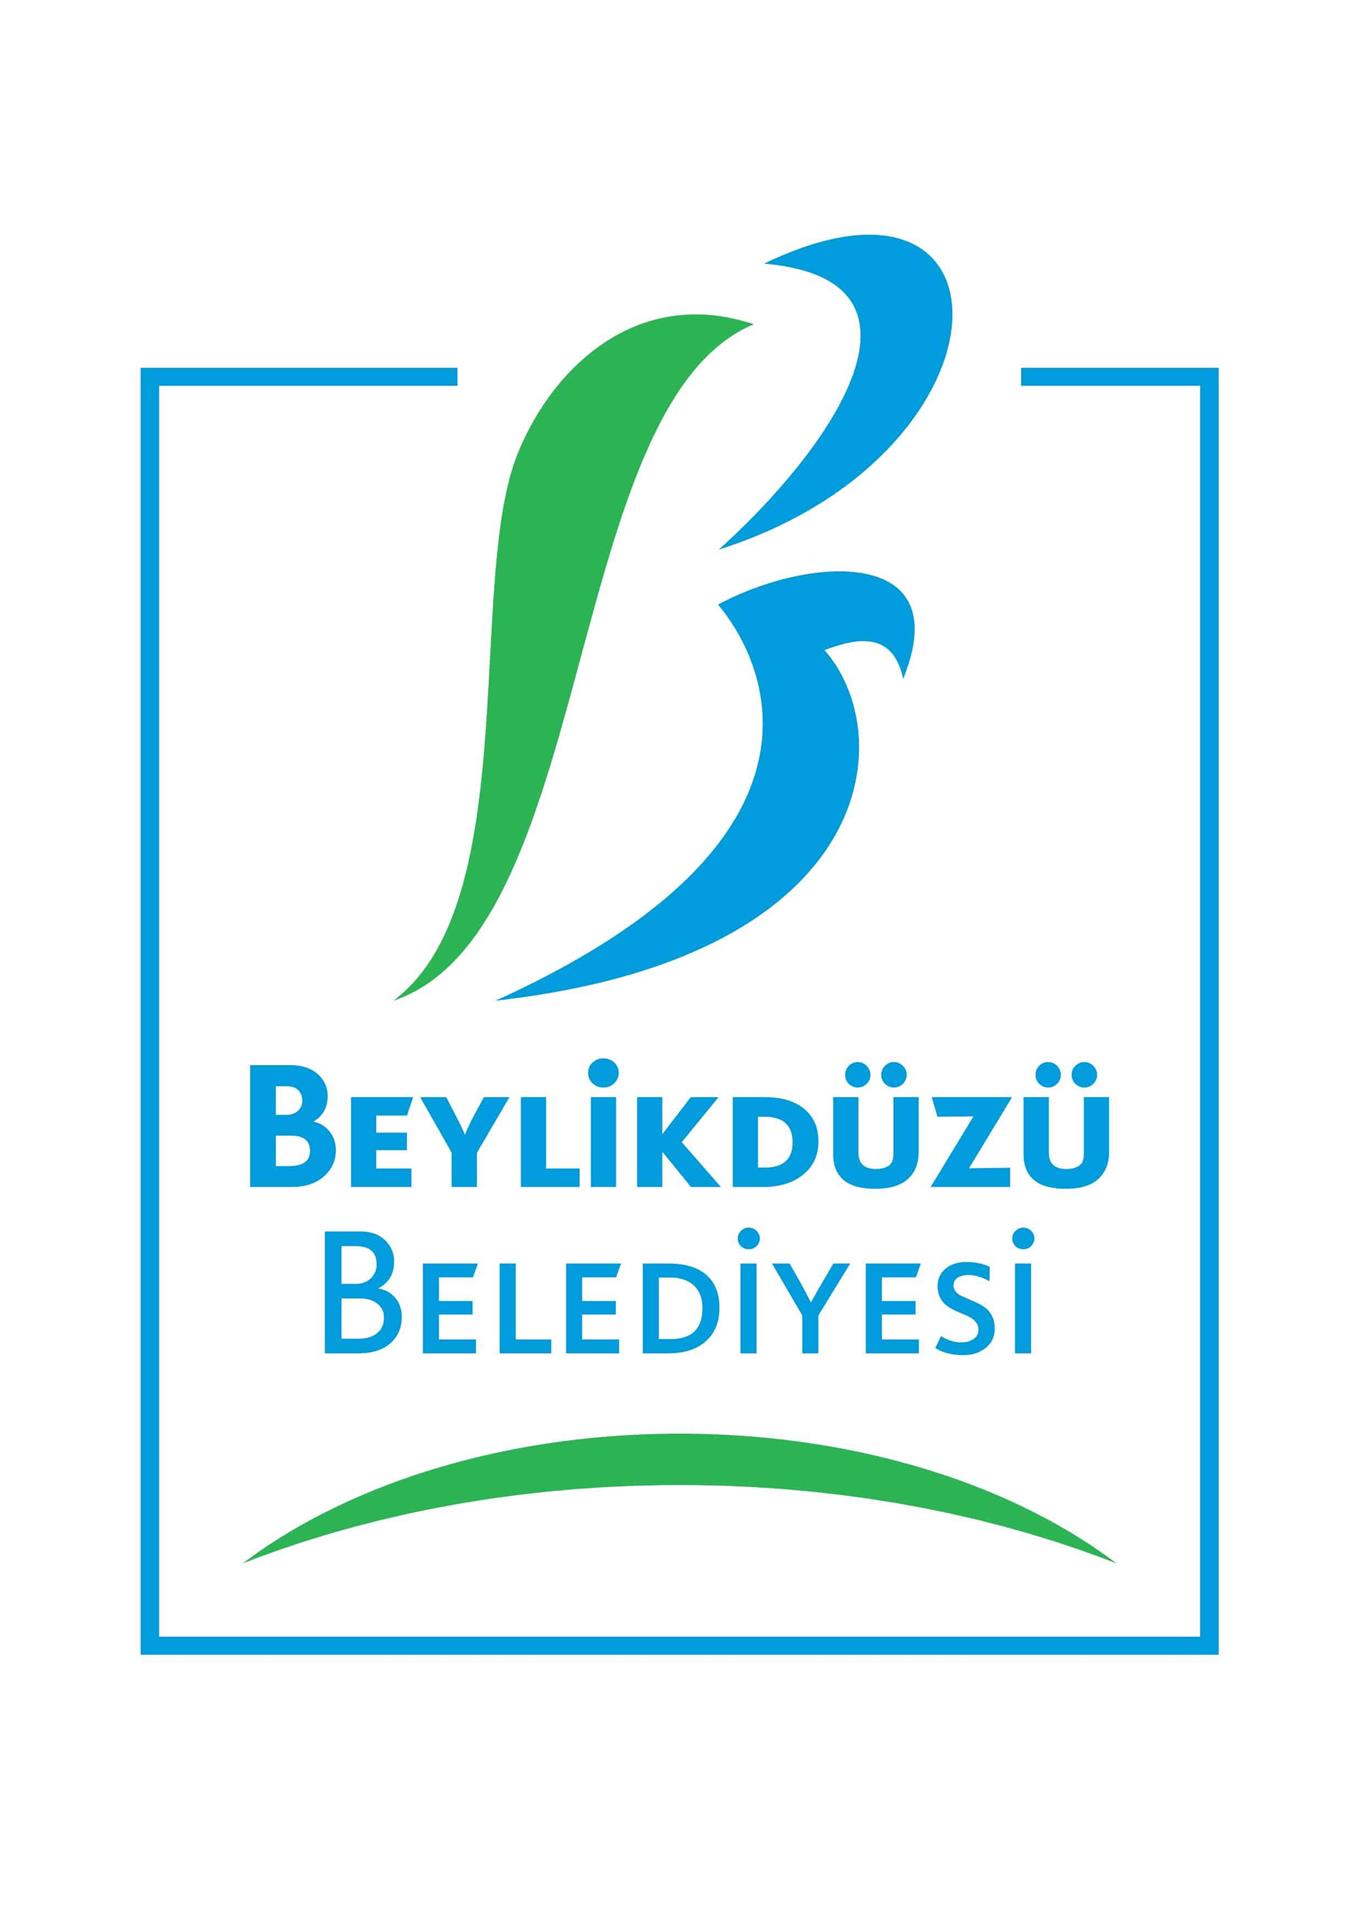 beylikduzu belediyesi logo